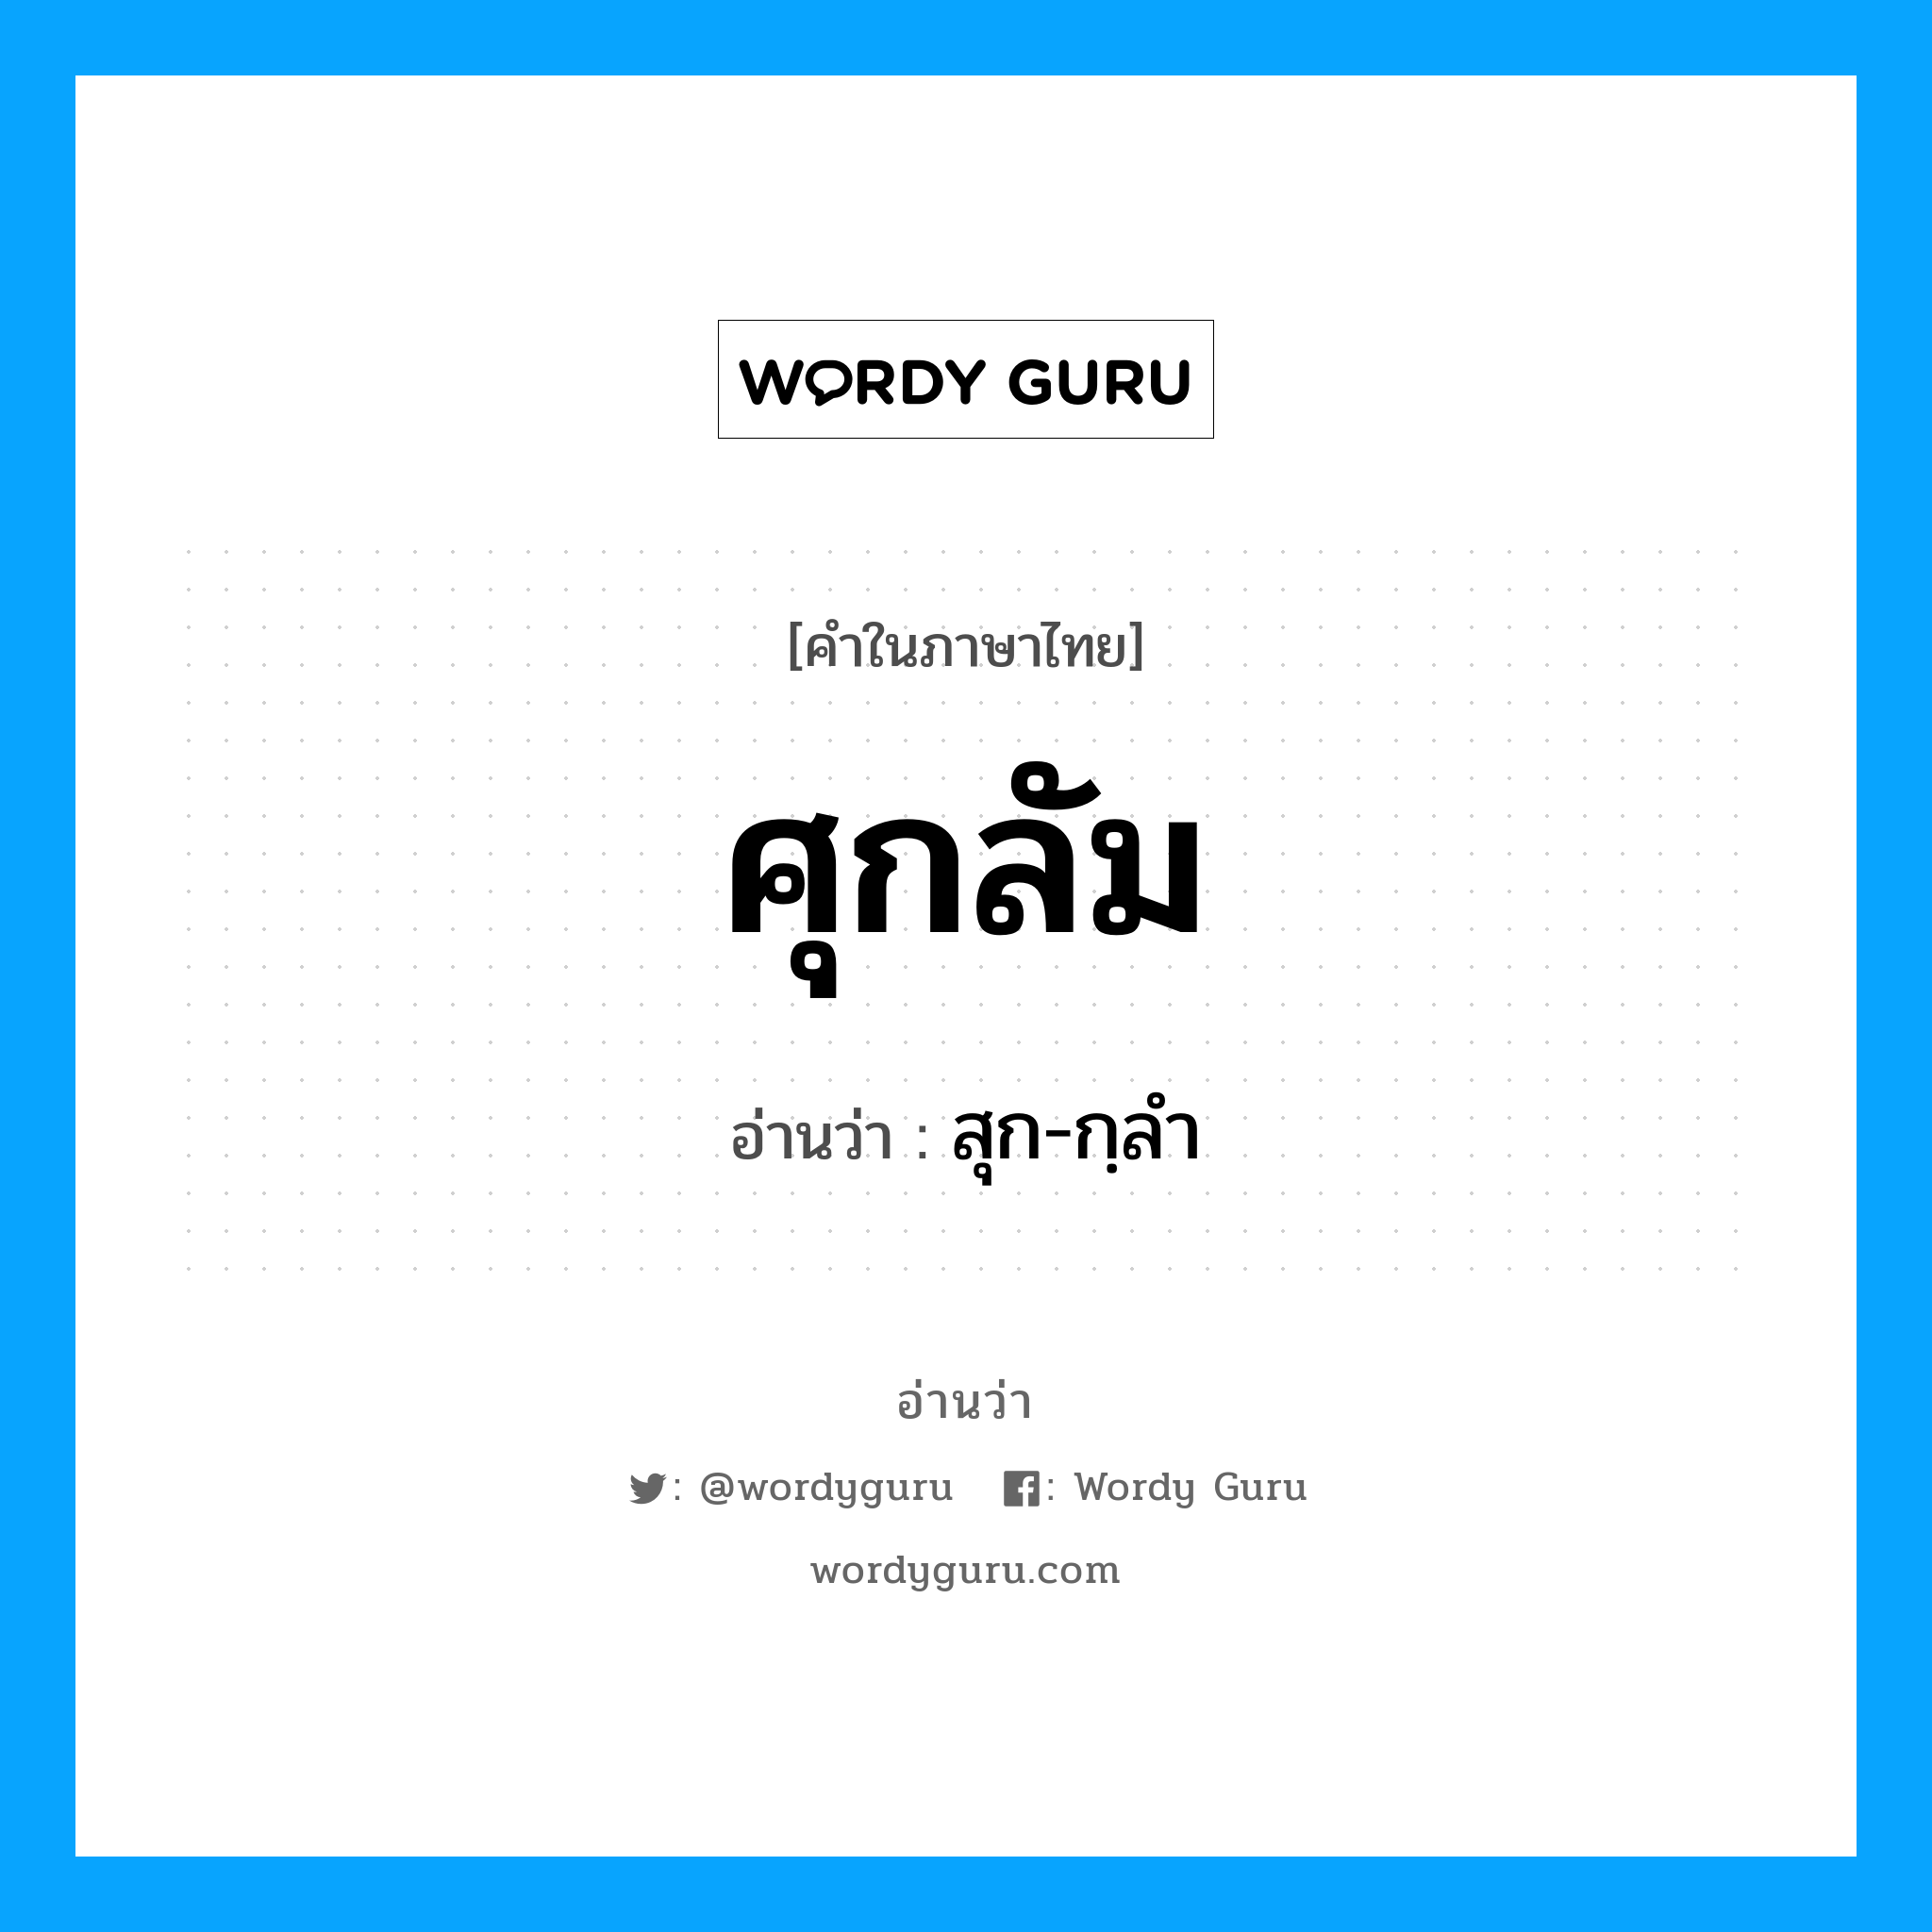 สุก-กฺลำ เป็นคำอ่านของคำไหน?, คำในภาษาไทย สุก-กฺลำ อ่านว่า ศุกลัม